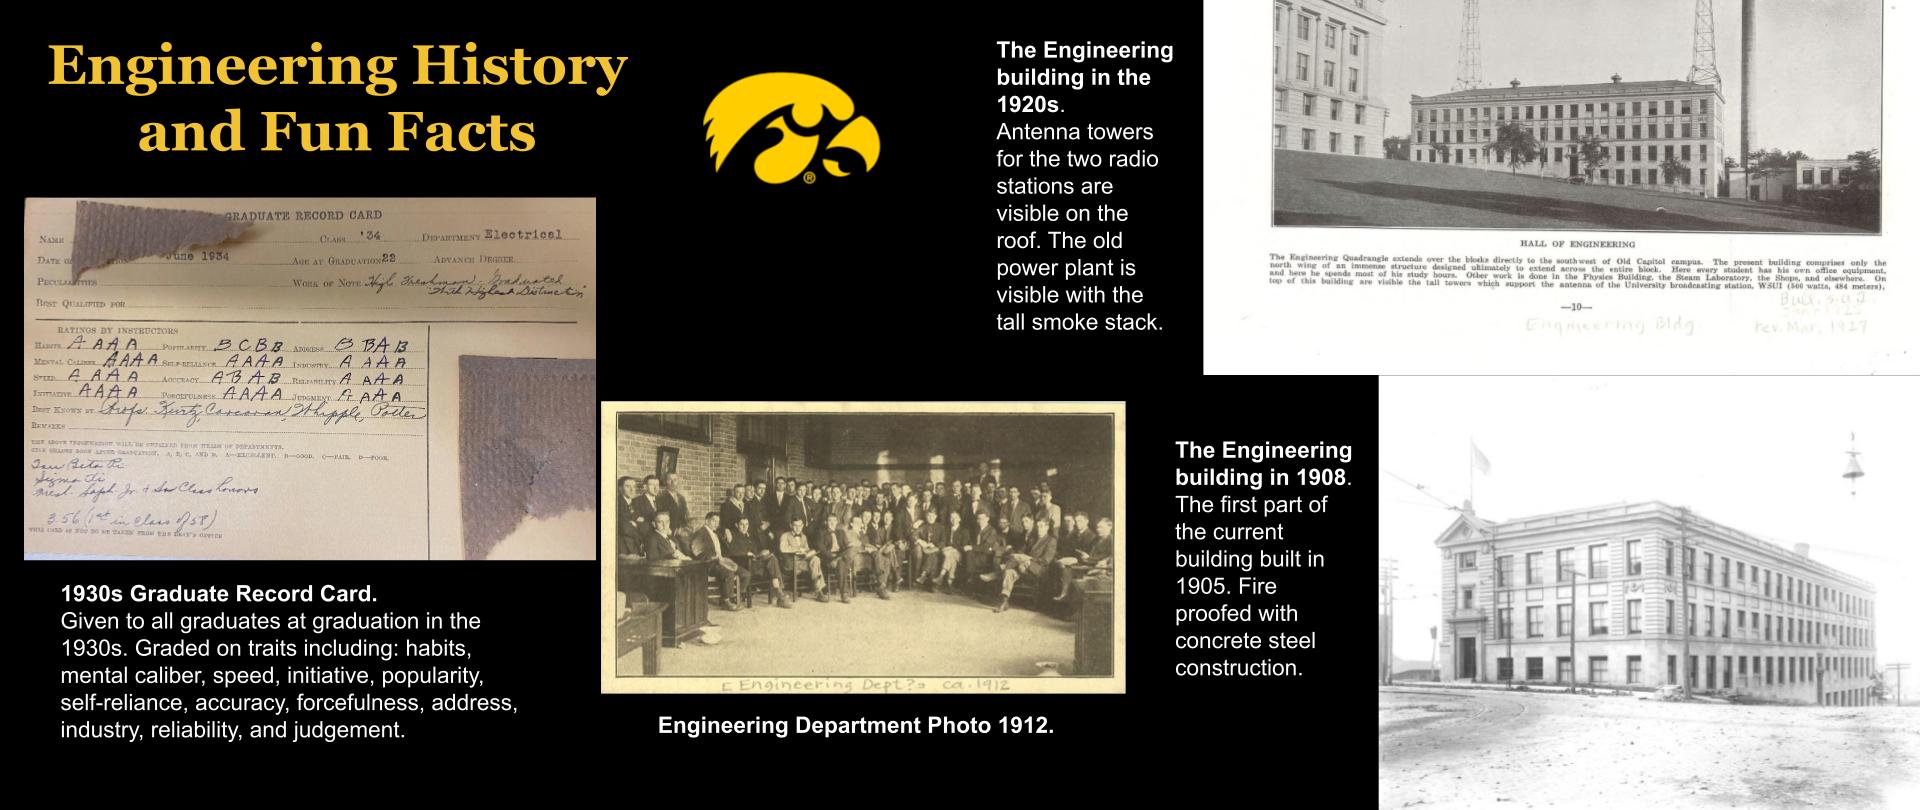 Engineering History